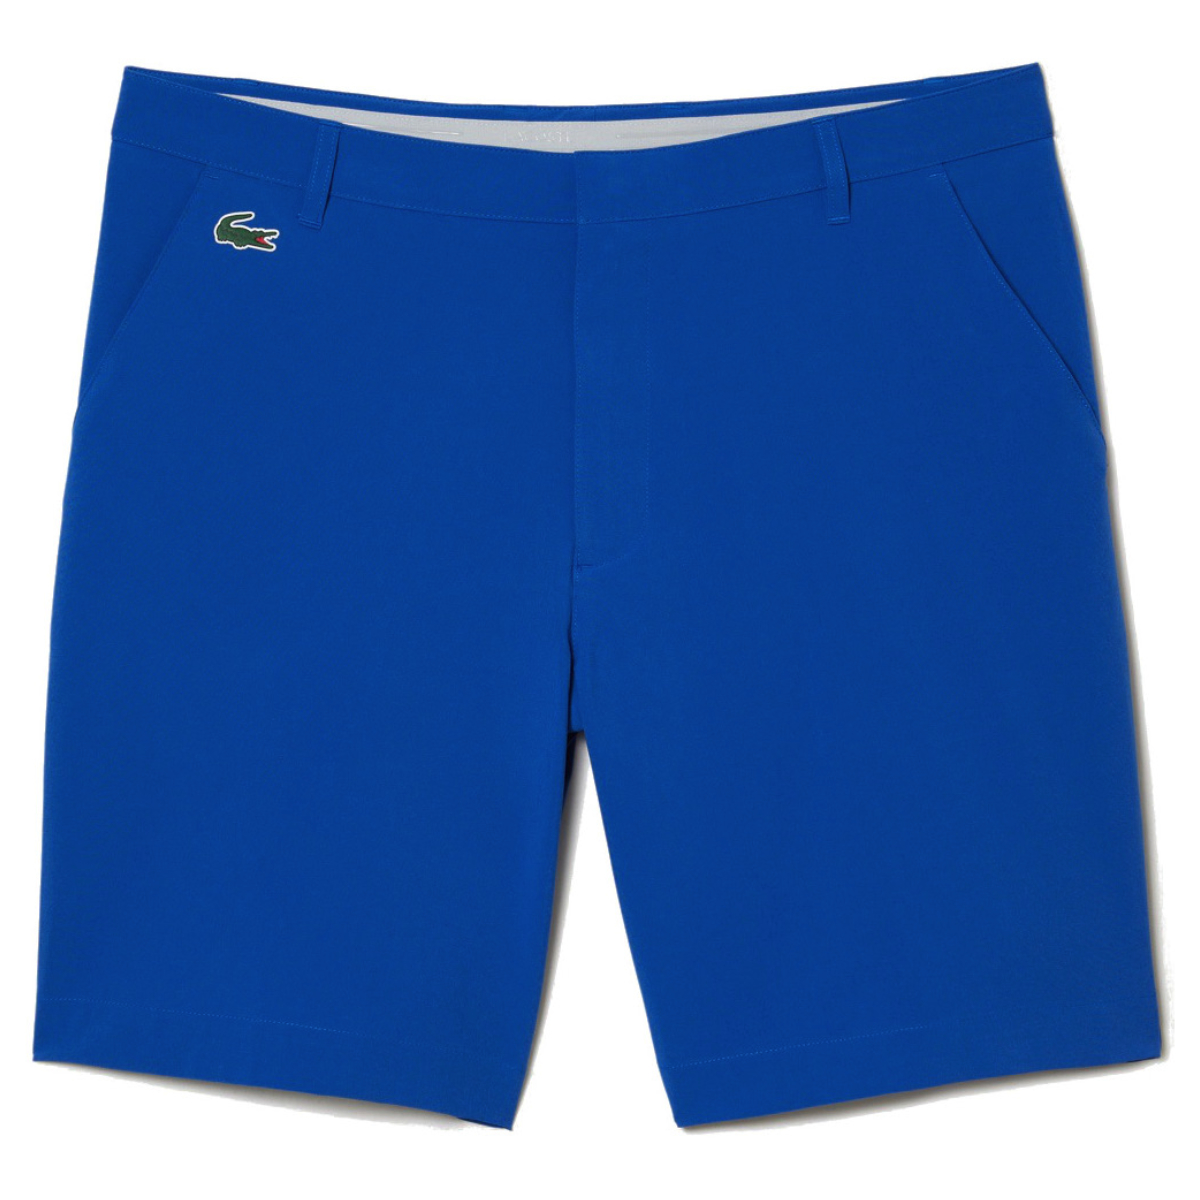 Lacoste Golf Shorts Blau